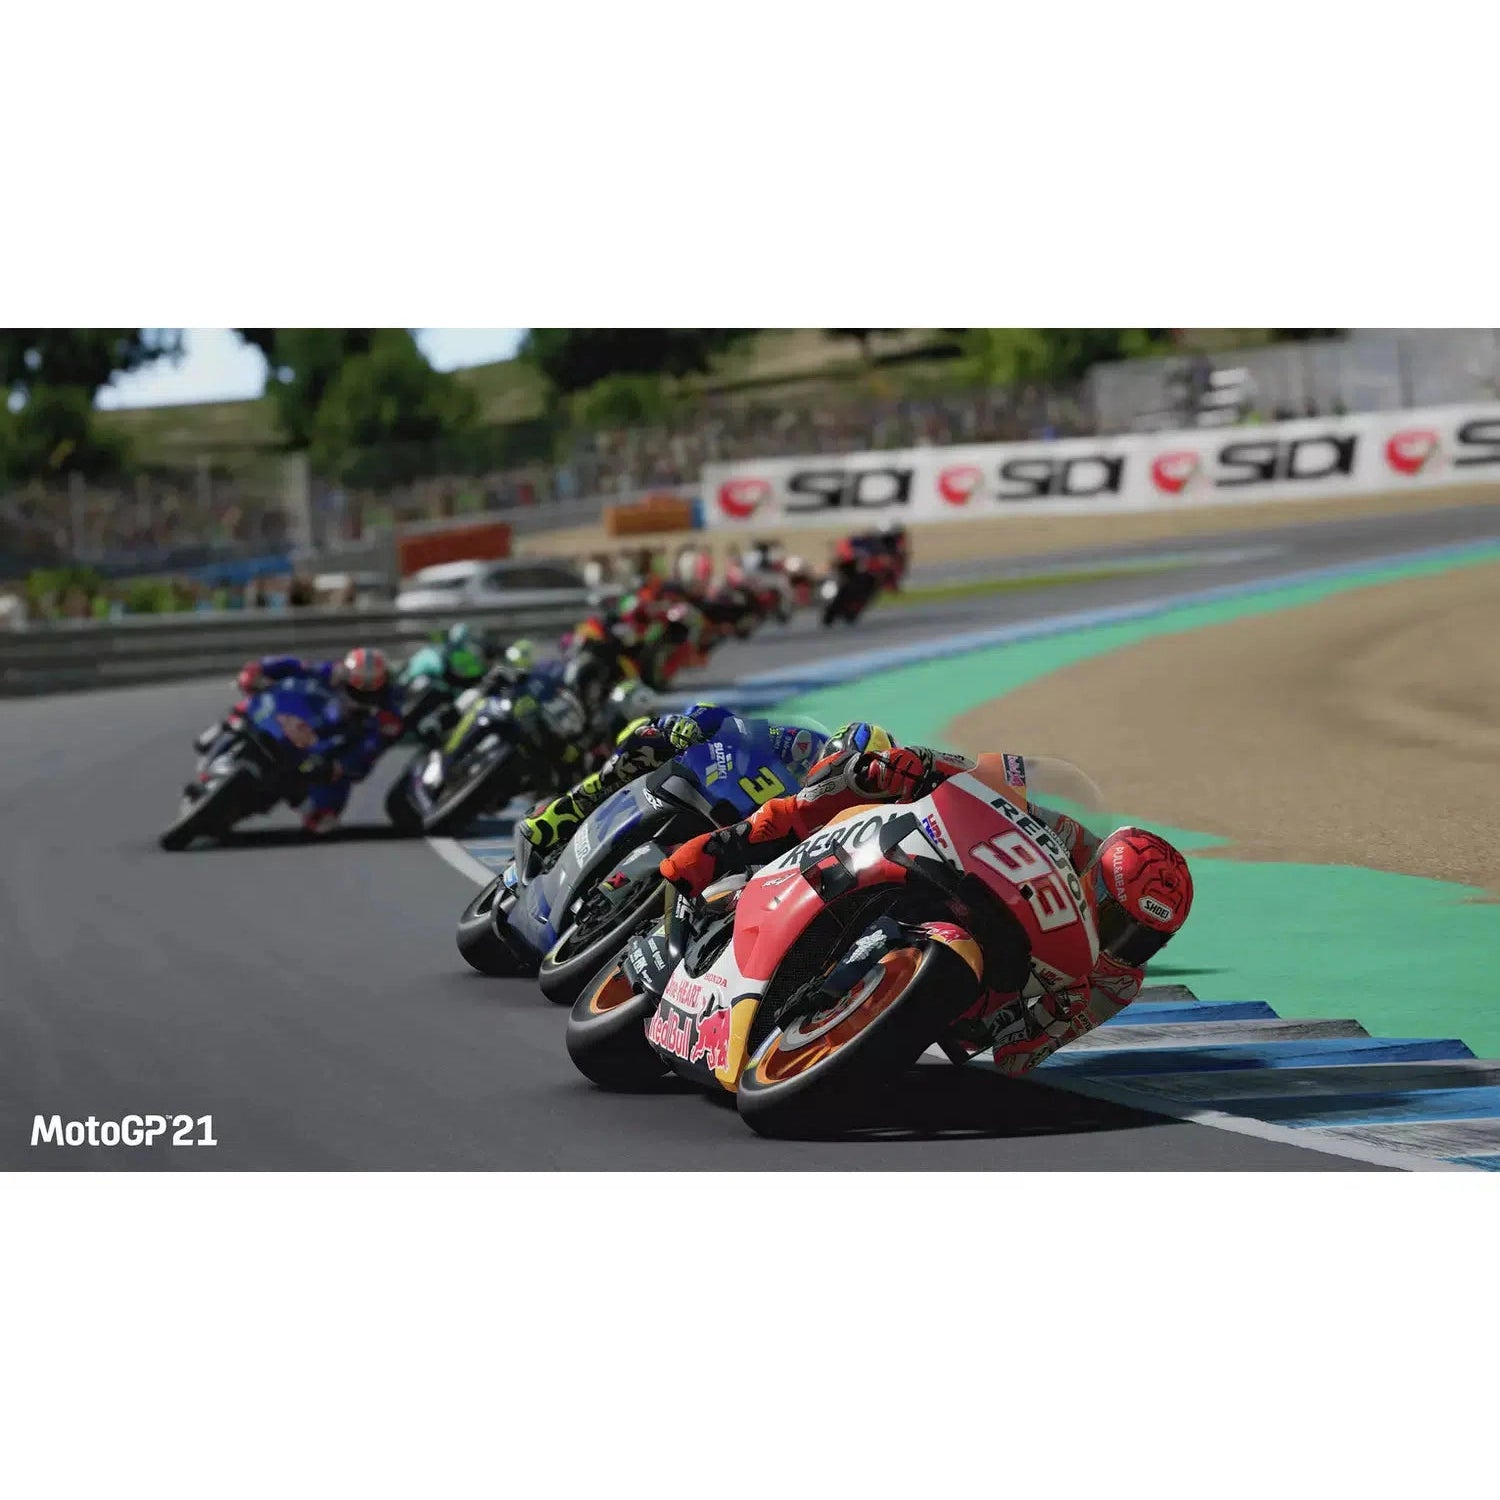 MotoGP 21 (Xbox Series X)